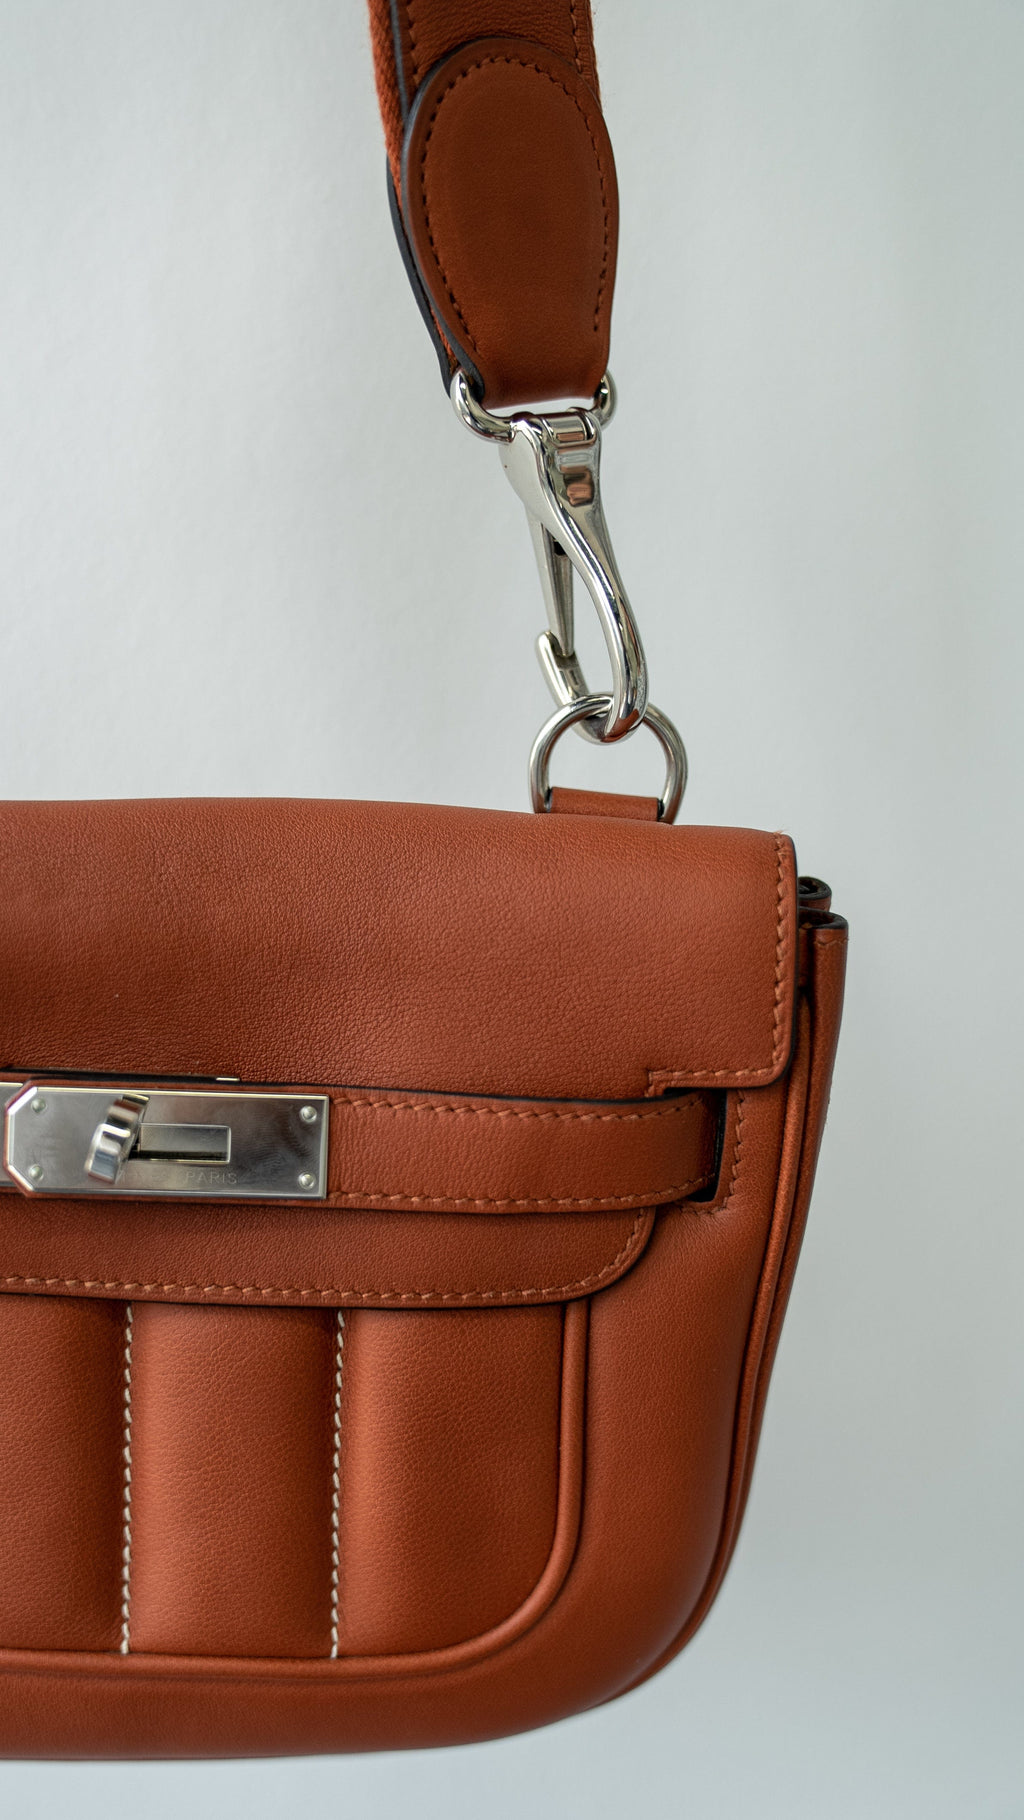 Hermes Berline leather handbag - ShopStyle Shoulder Bags